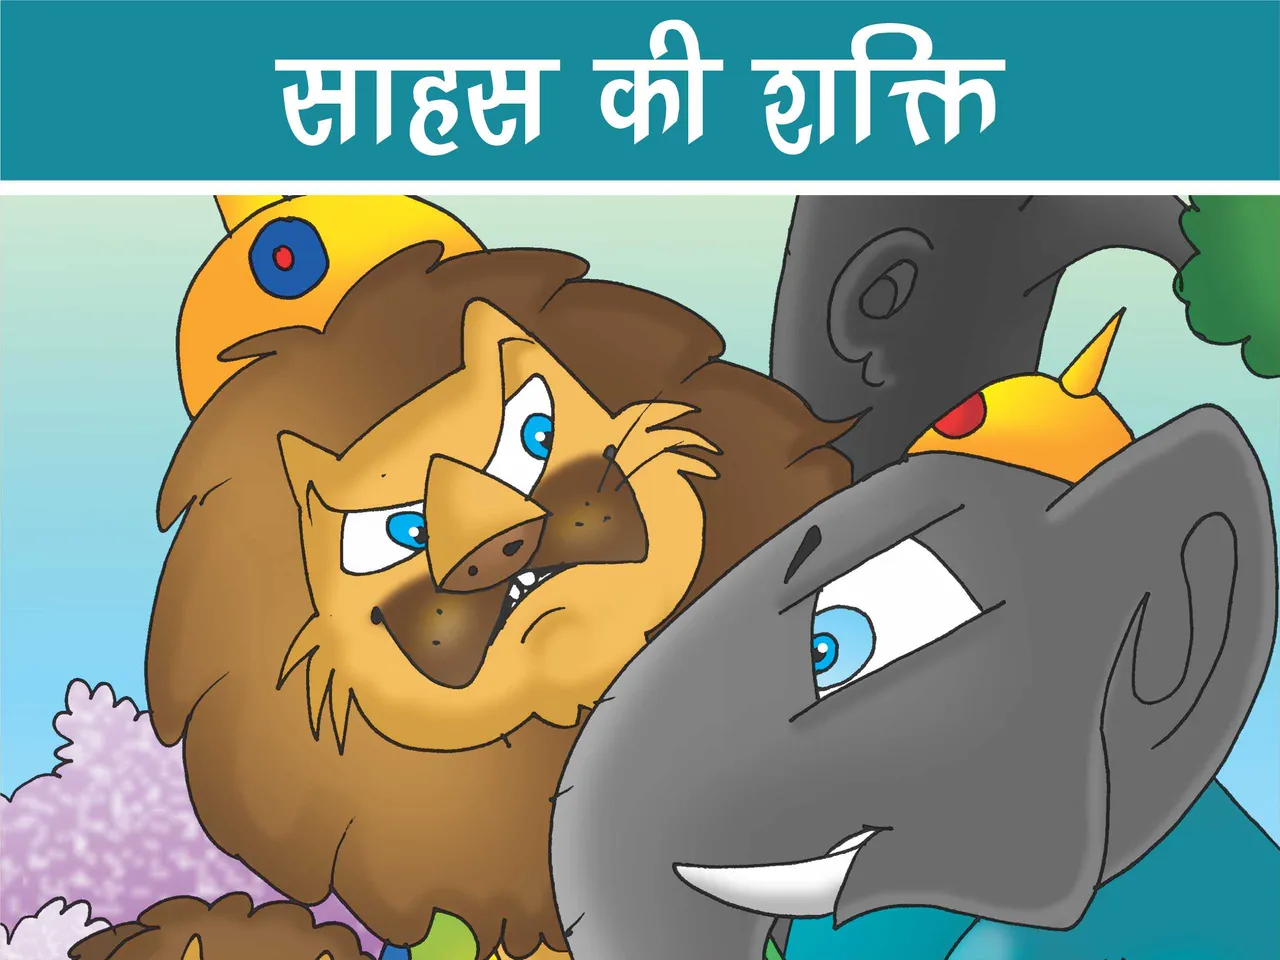 Lion King and Elephant cartoon image